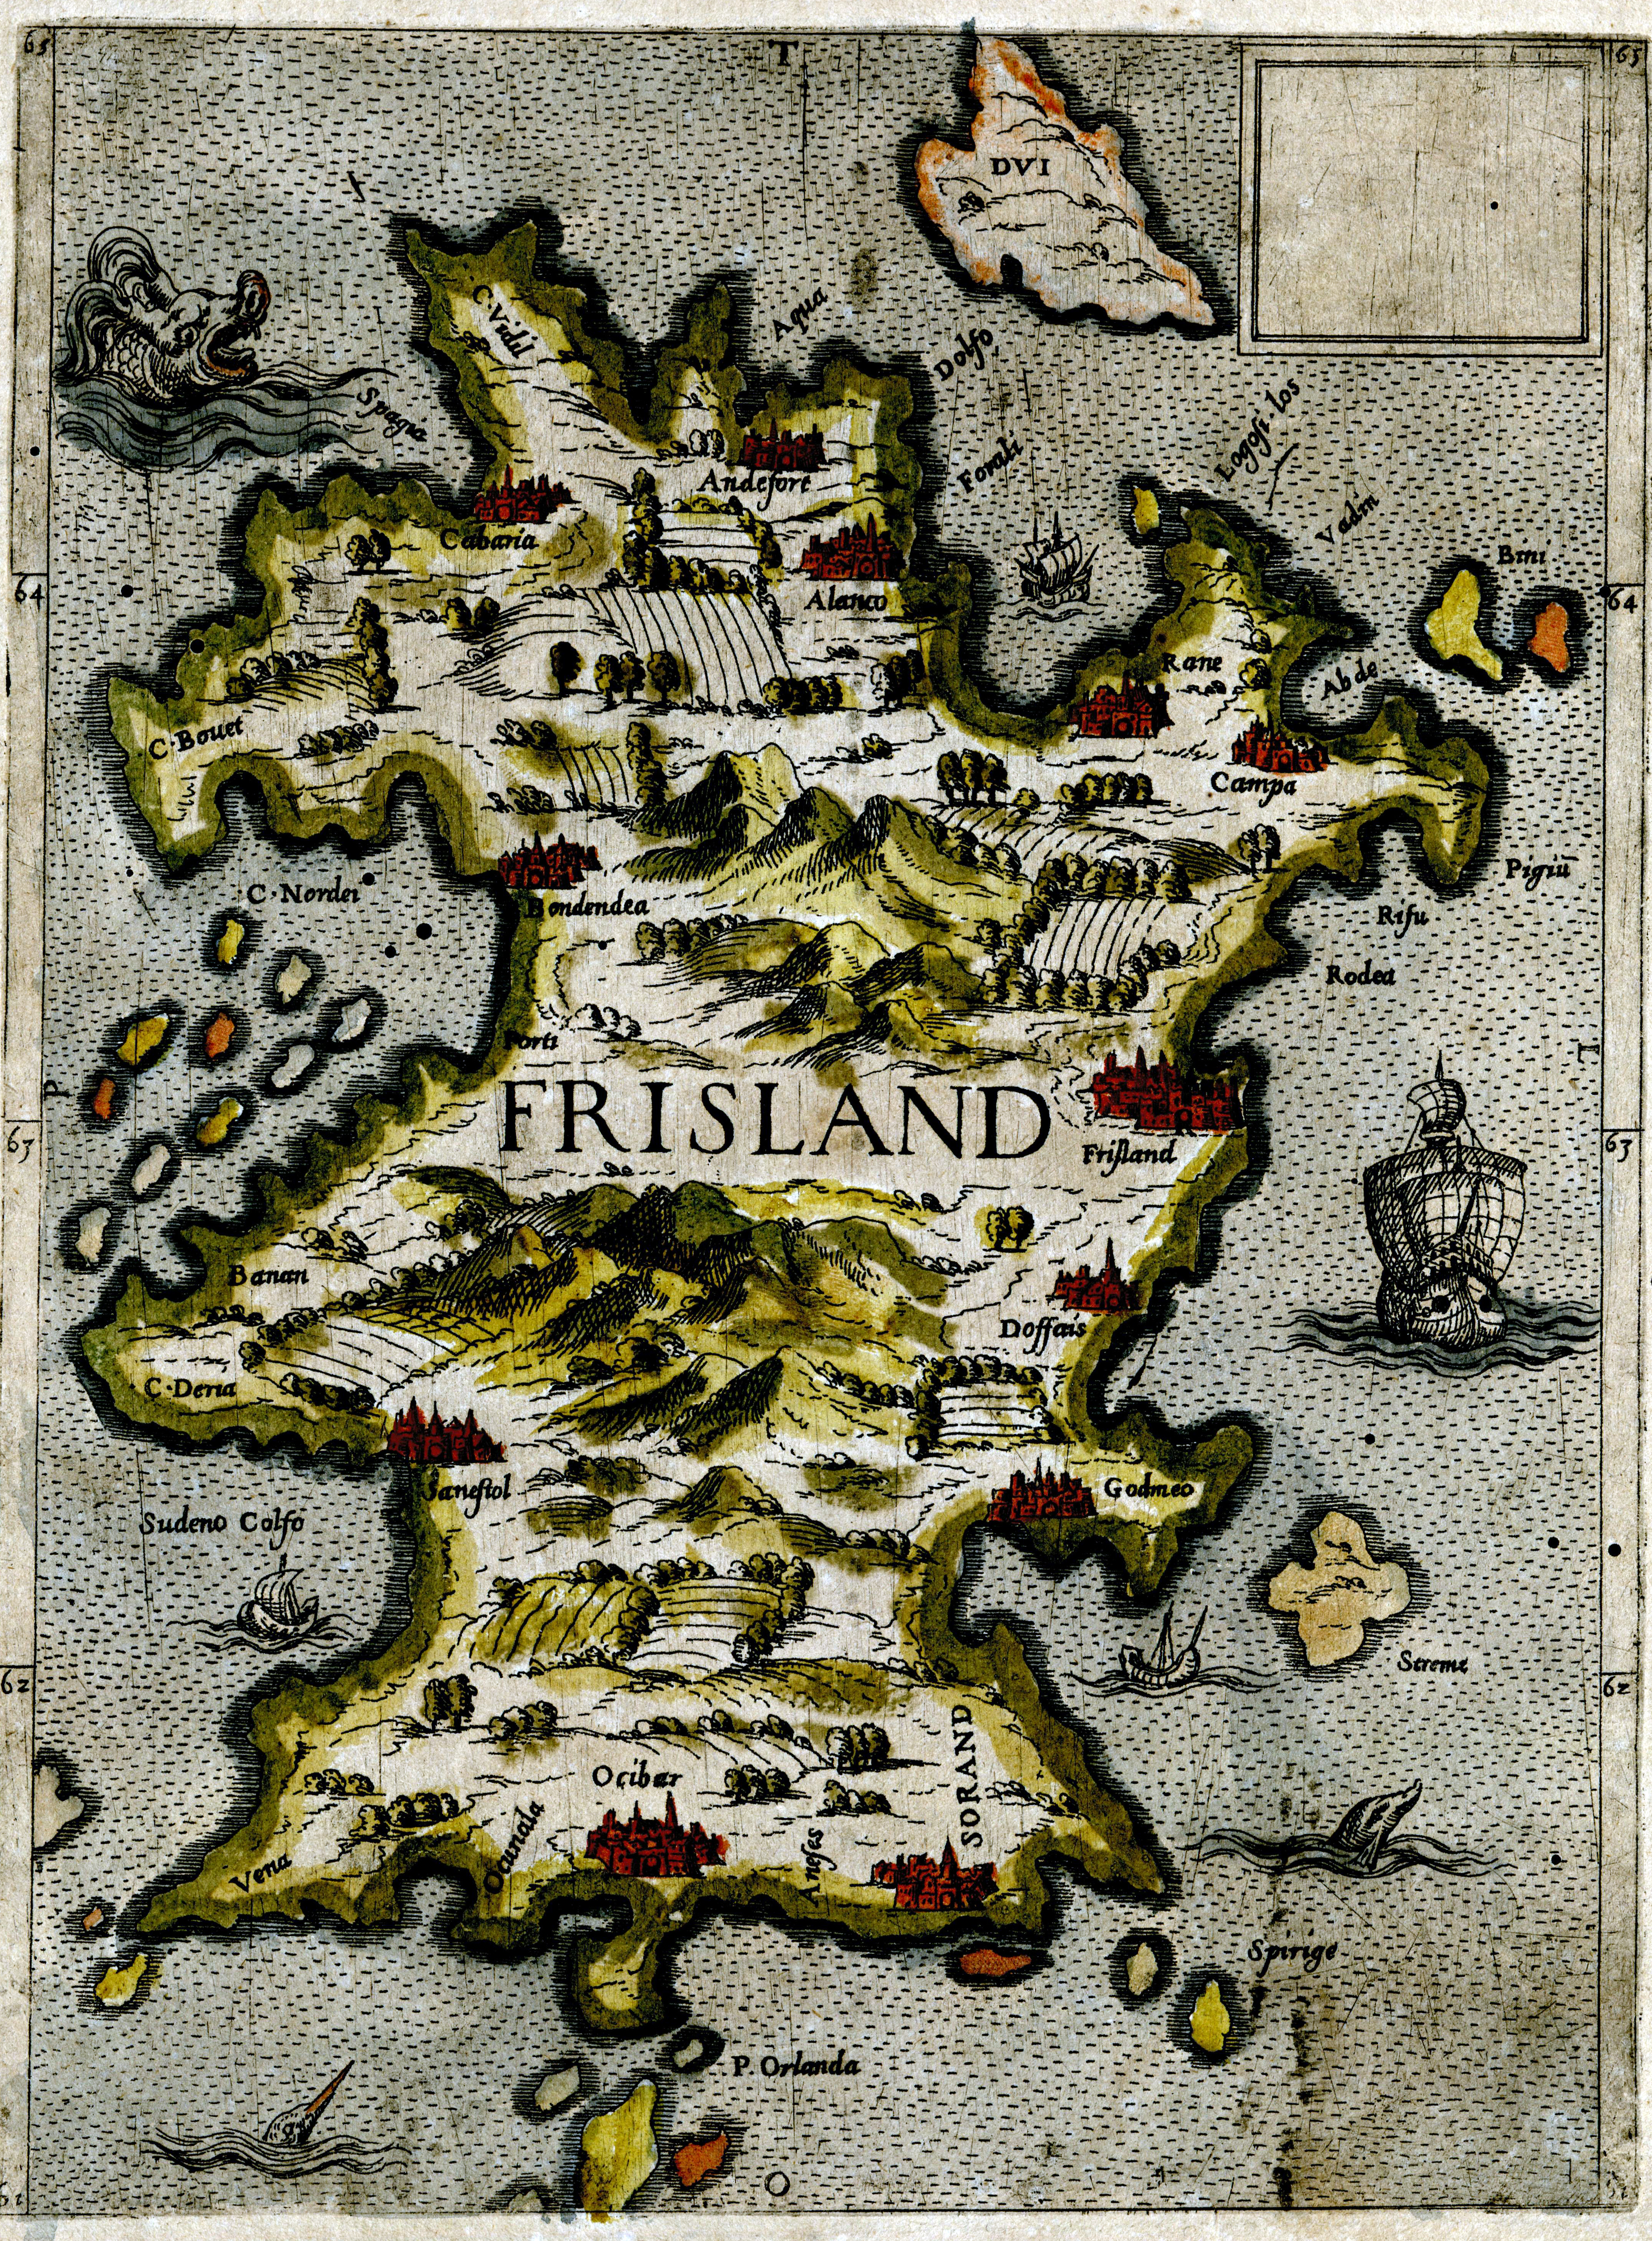 Dafür, dass die Insel nicht existiert, fallen die Darstellungen Frislands zum Teil sehr detailreich aus.
						So werden auf dem italienischen Holzschnitt des Jahres 1590 Städte und Siedlungen benannt, sowie Berge und Felder verzeichnet.